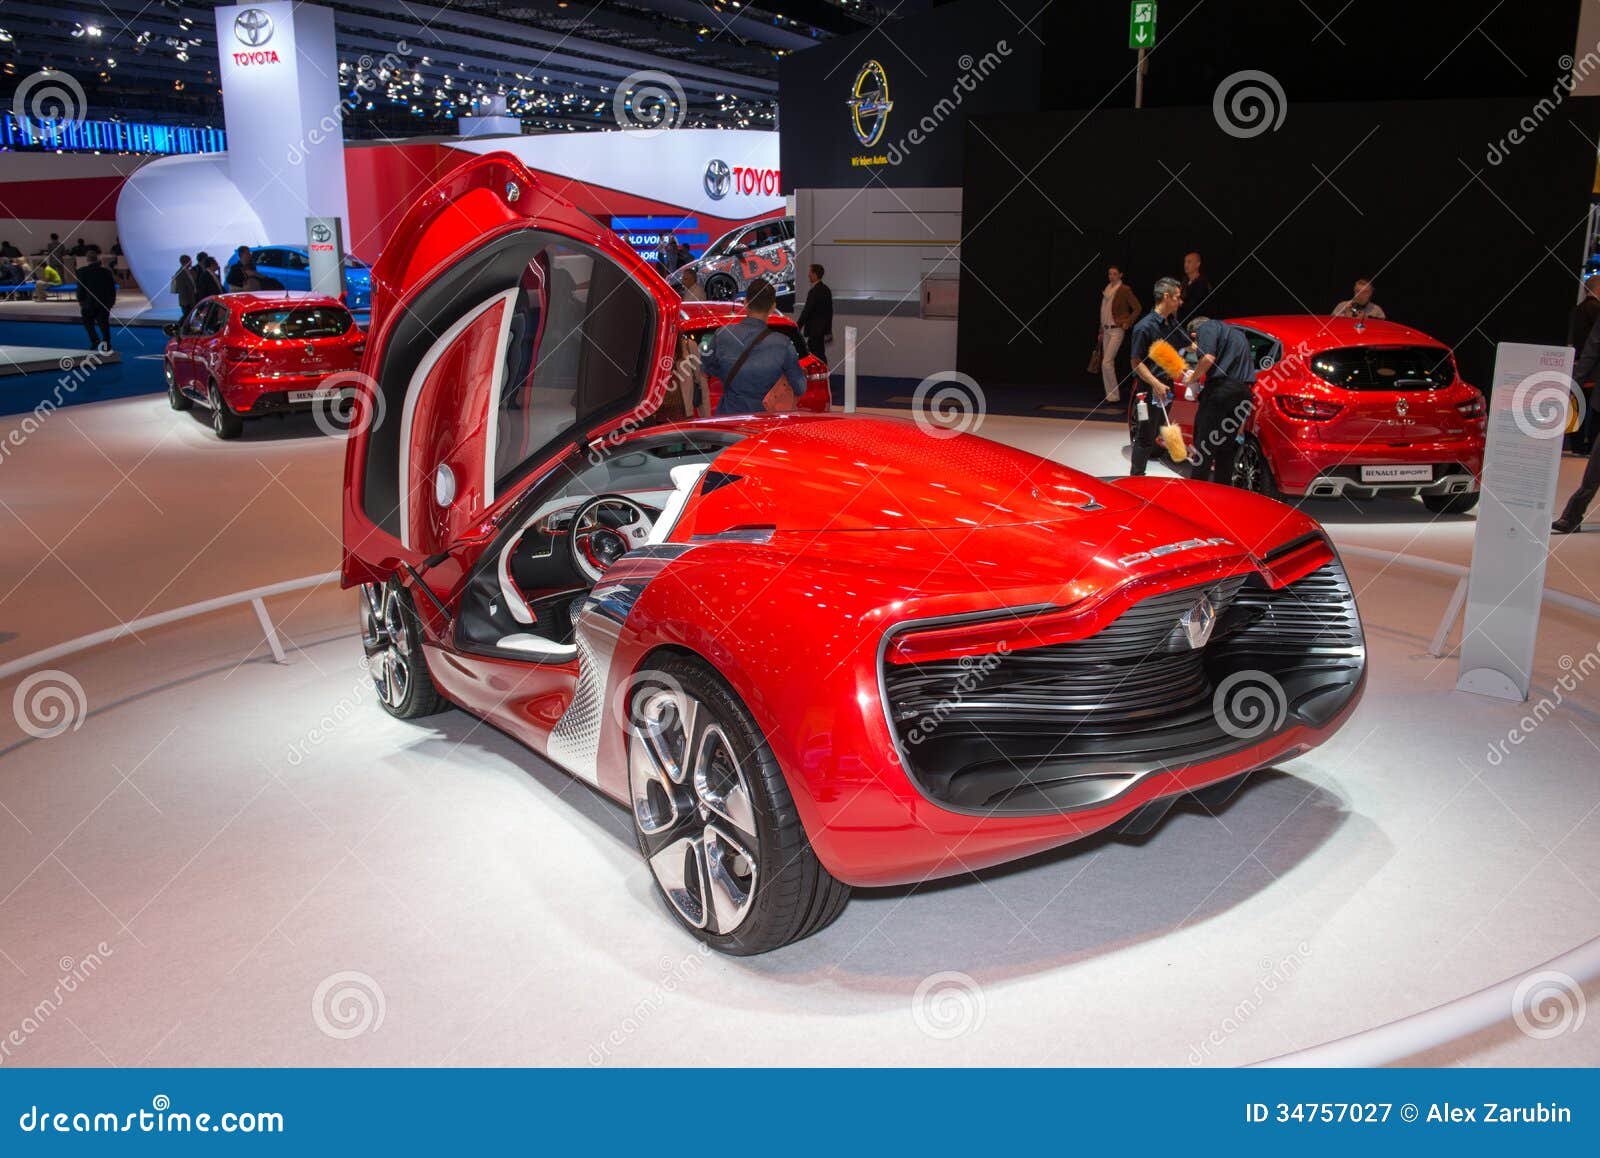 Salone dell'automobile internazionale di Francoforte (IAA) 2013. Automobile di Renault Dezir Concept